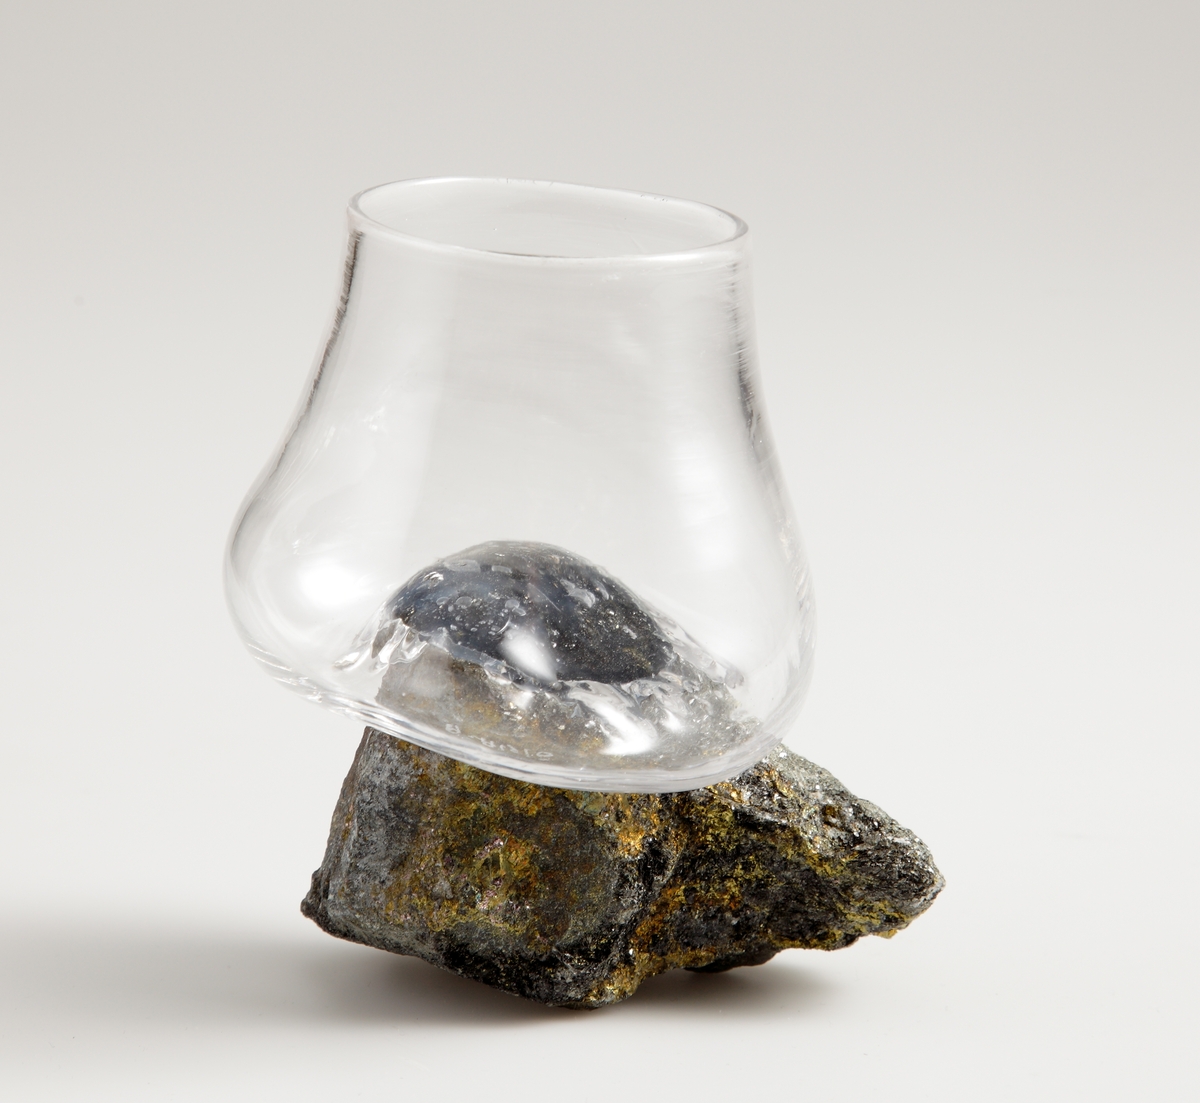 Dricksglas "On The Rocks" bestående av ett glas som är limmat på en sten. Glaset är friblåst och ser ut att ha sjunkit över den guld- och gråglimmande stenen.